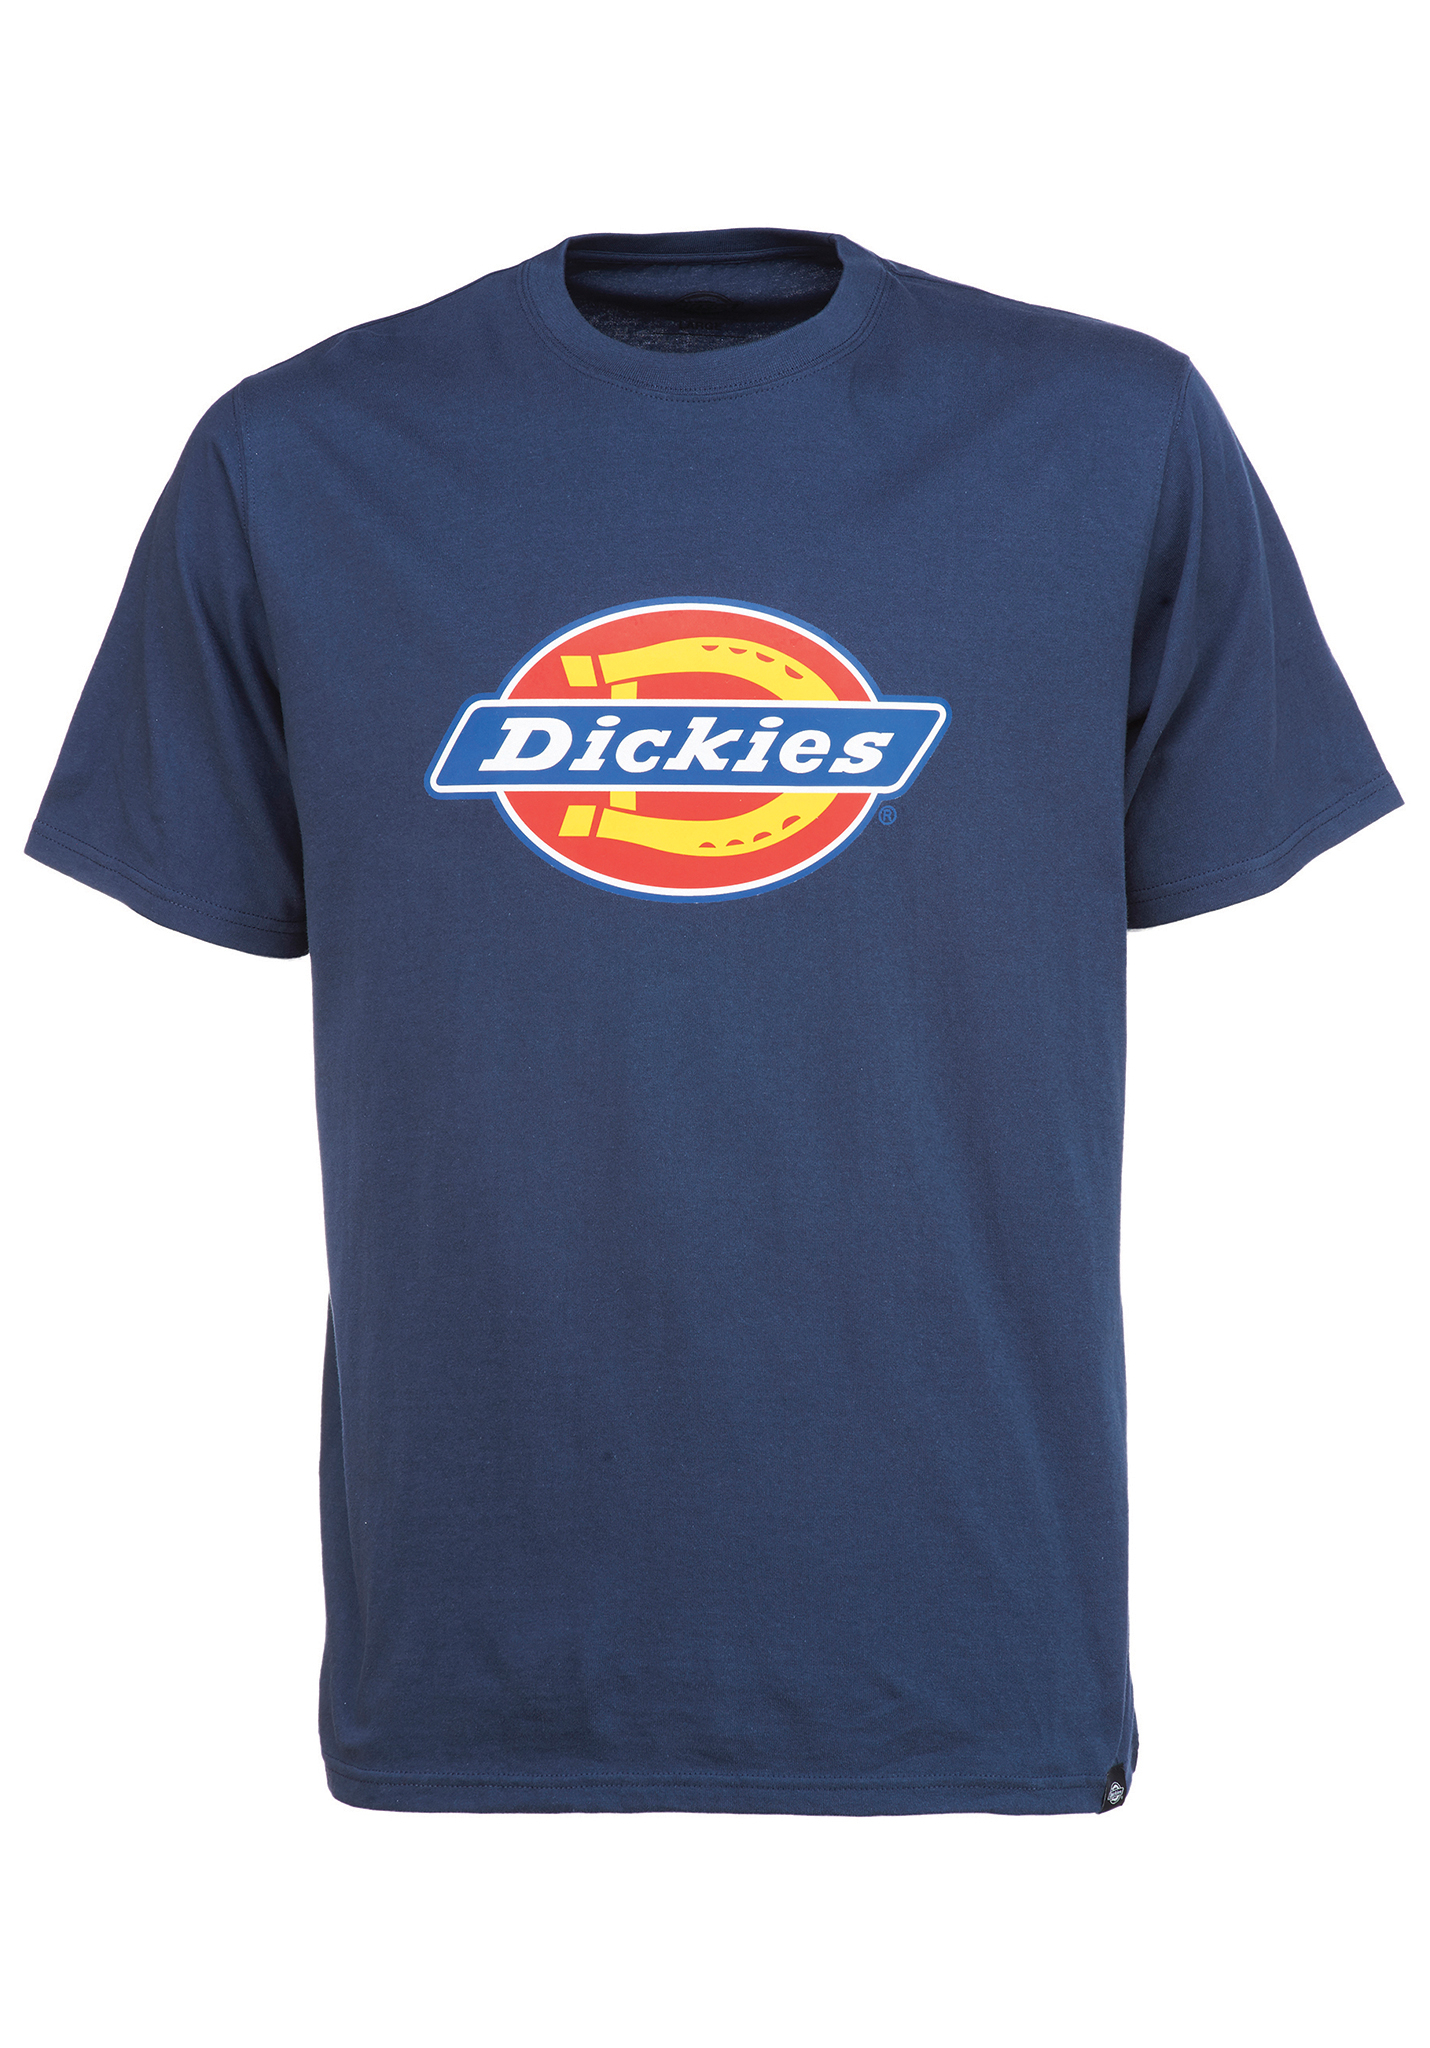 Dickies Horseshoe T-Shirt navy blue XXXL